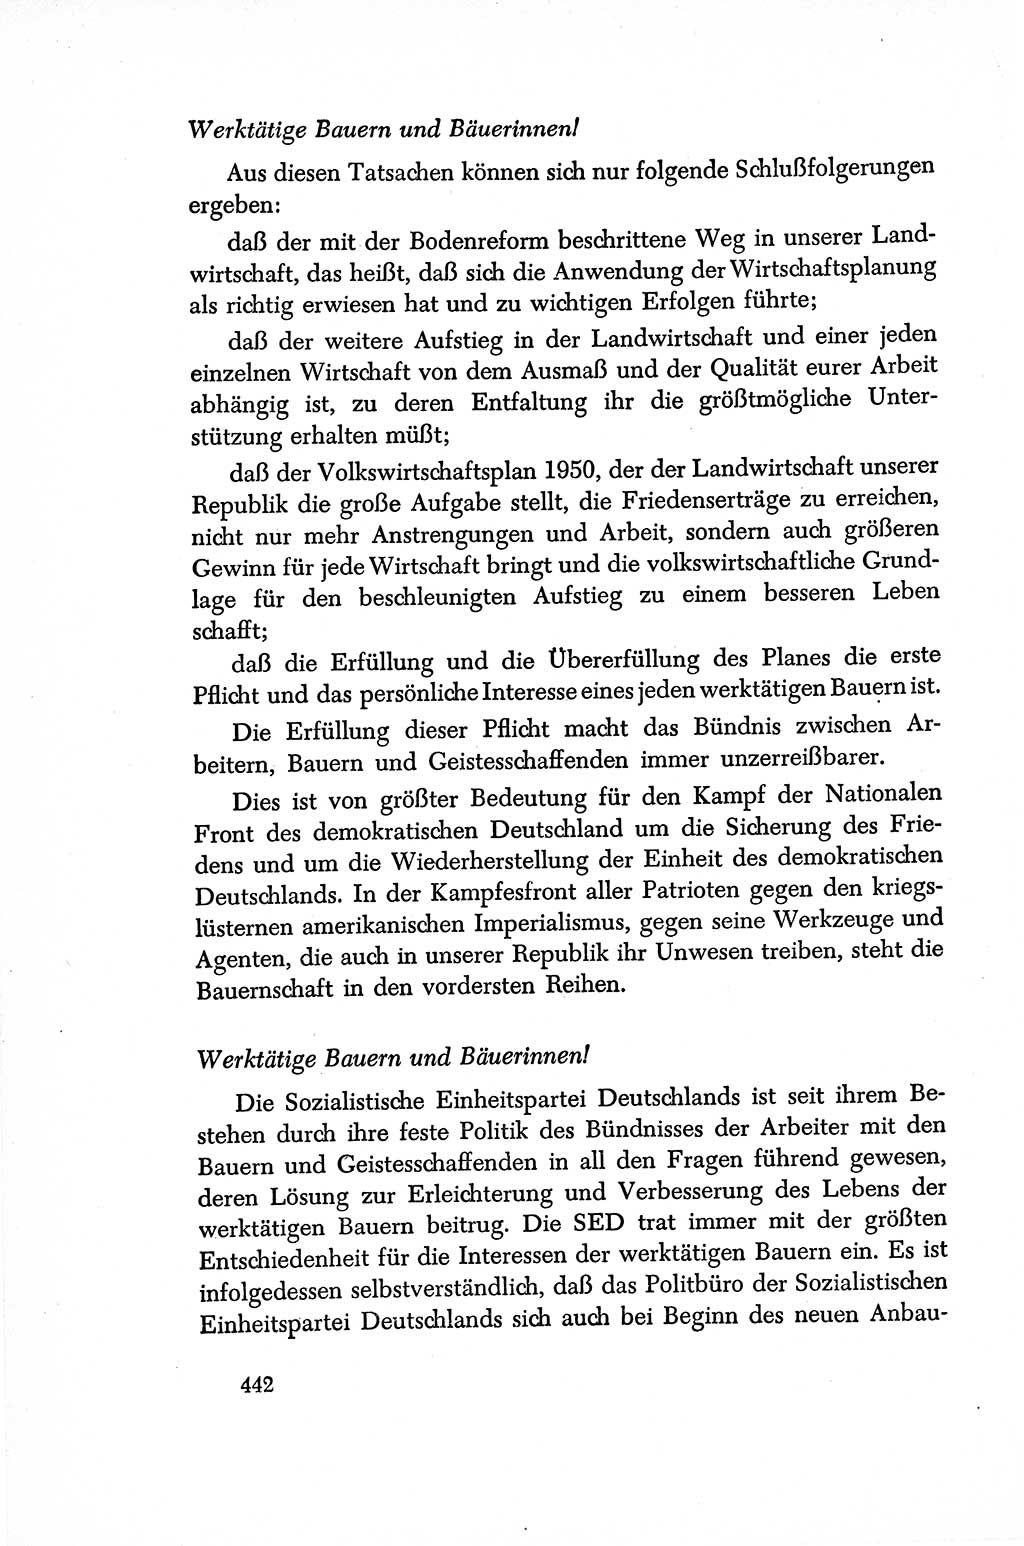 Dokumente der Sozialistischen Einheitspartei Deutschlands (SED) [Sowjetische Besatzungszone (SBZ) Deutschlands/Deutsche Demokratische Republik (DDR)] 1948-1950, Seite 442 (Dok. SED SBZ Dtl. DDR 1948-1950, S. 442)